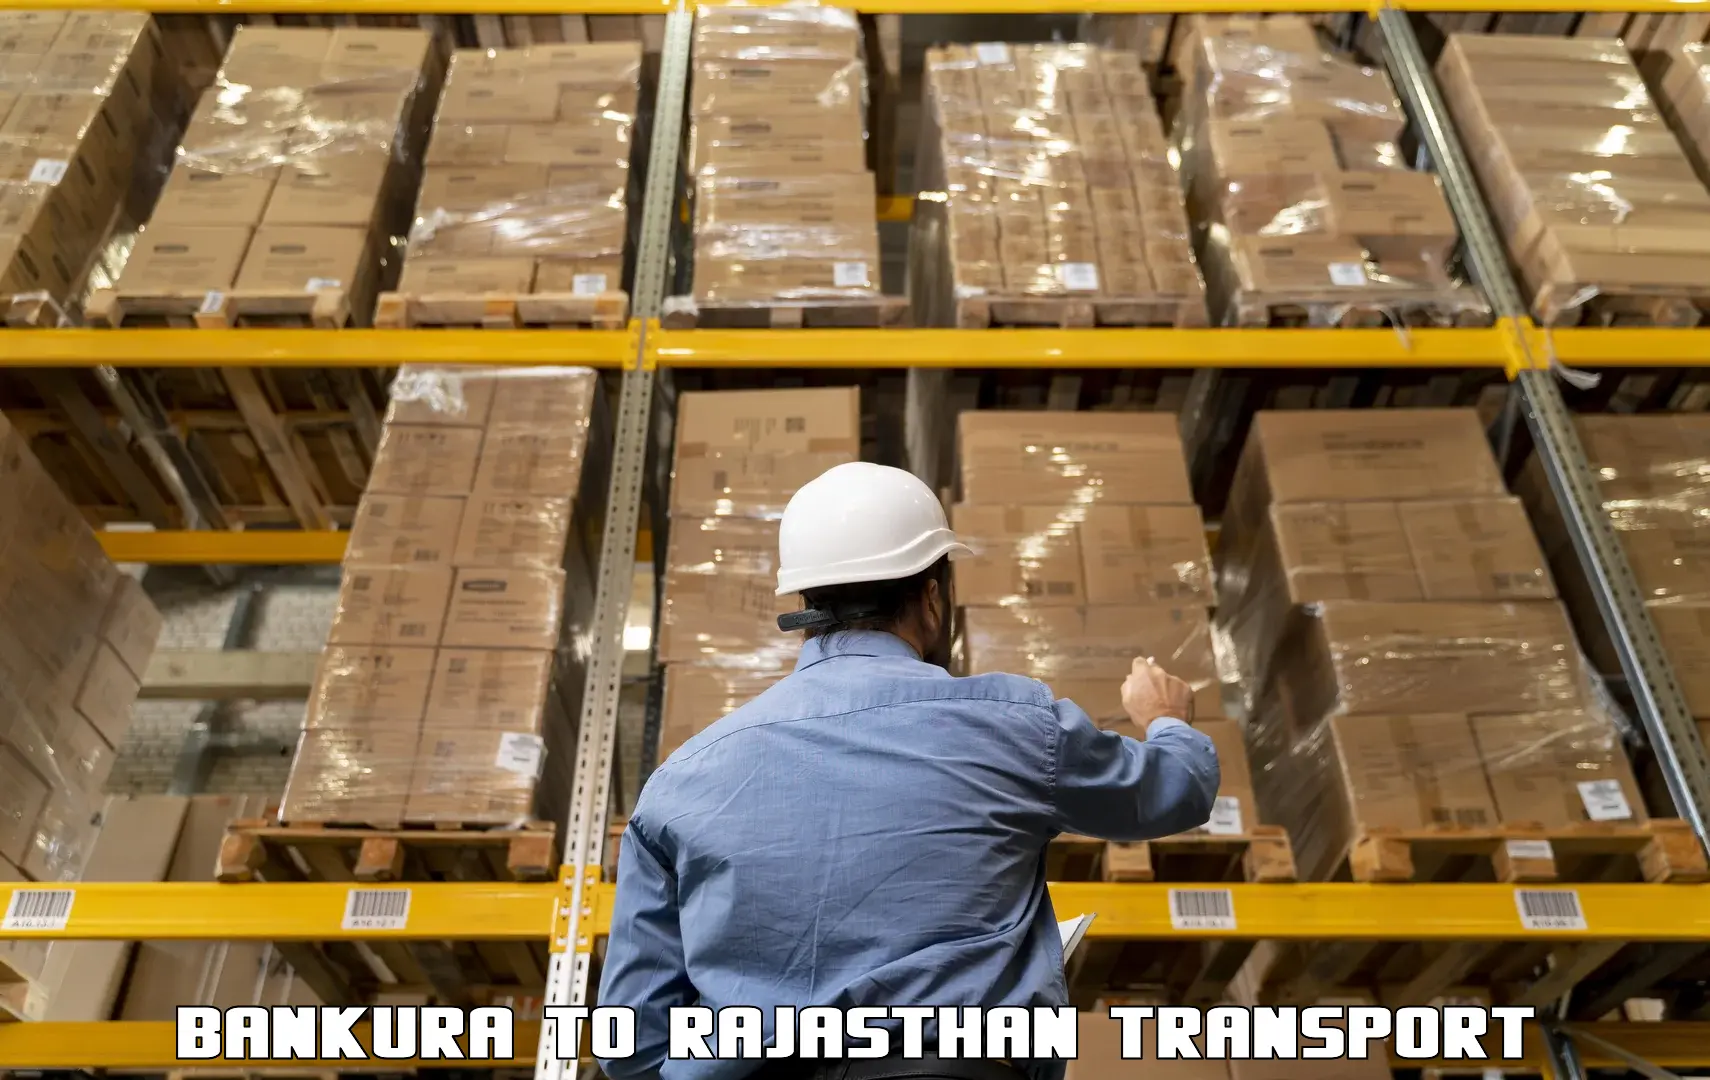 Delivery service Bankura to Dholpur